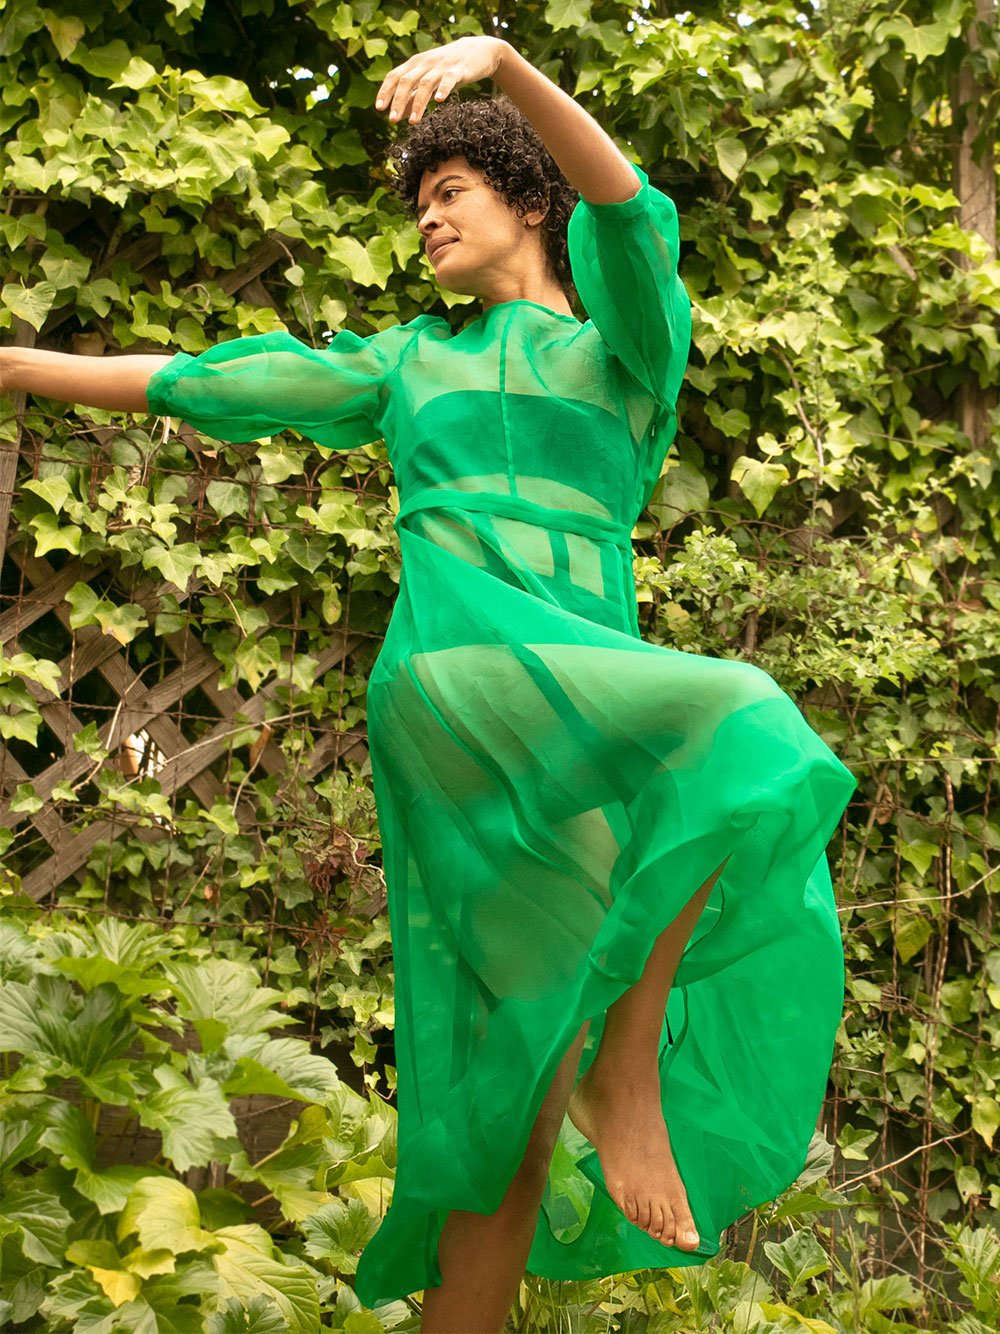 black womxn dancing wearing a kelly green dress